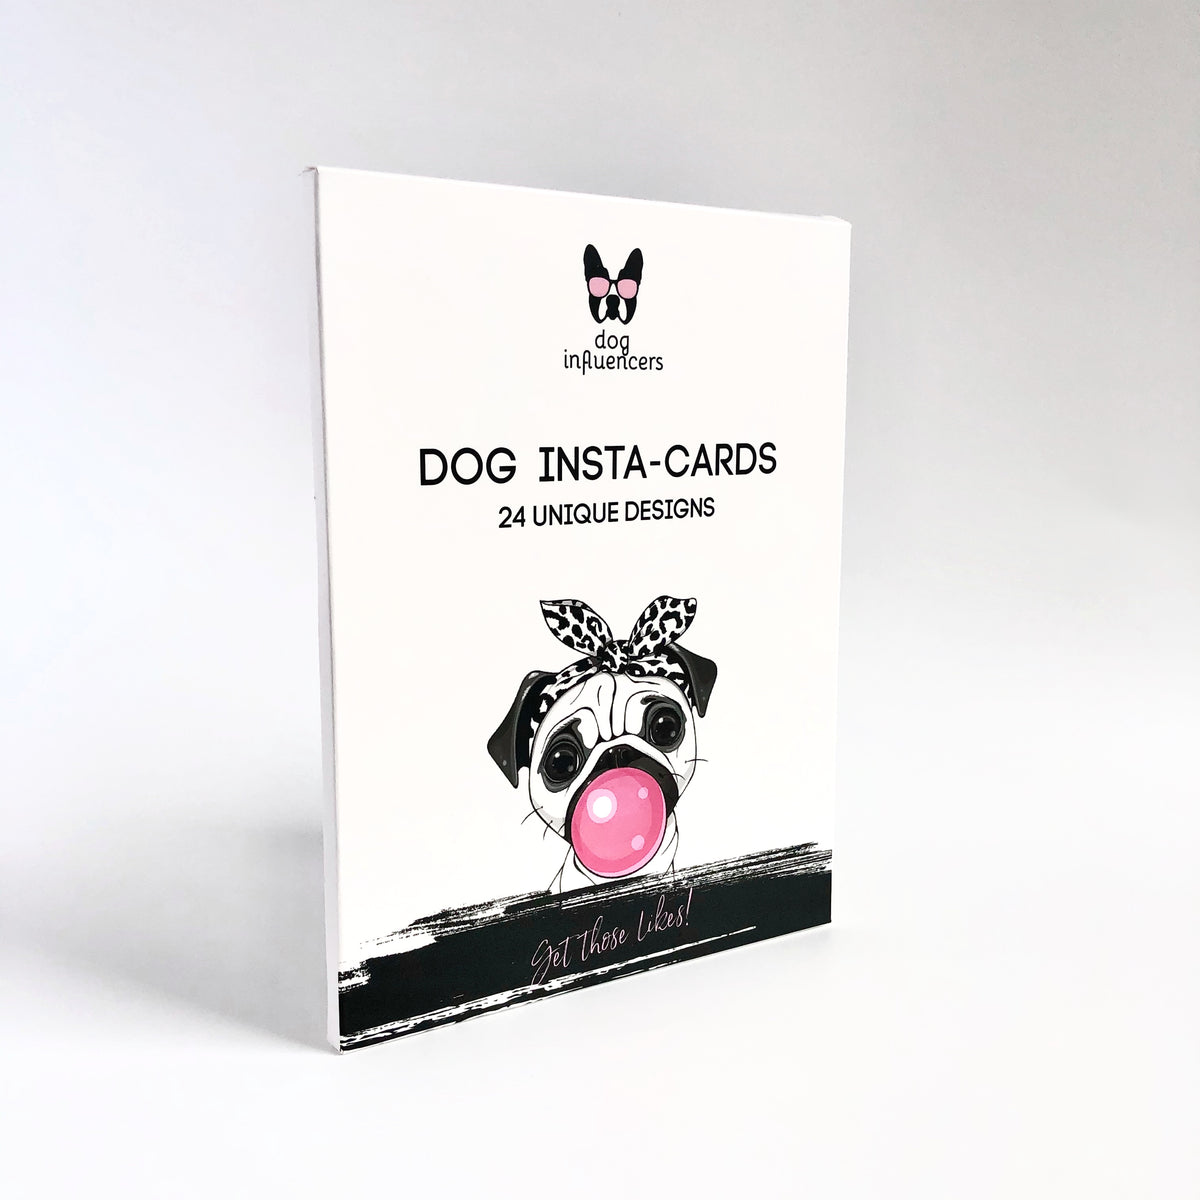 Dog Insta-cards - Dog Influencers